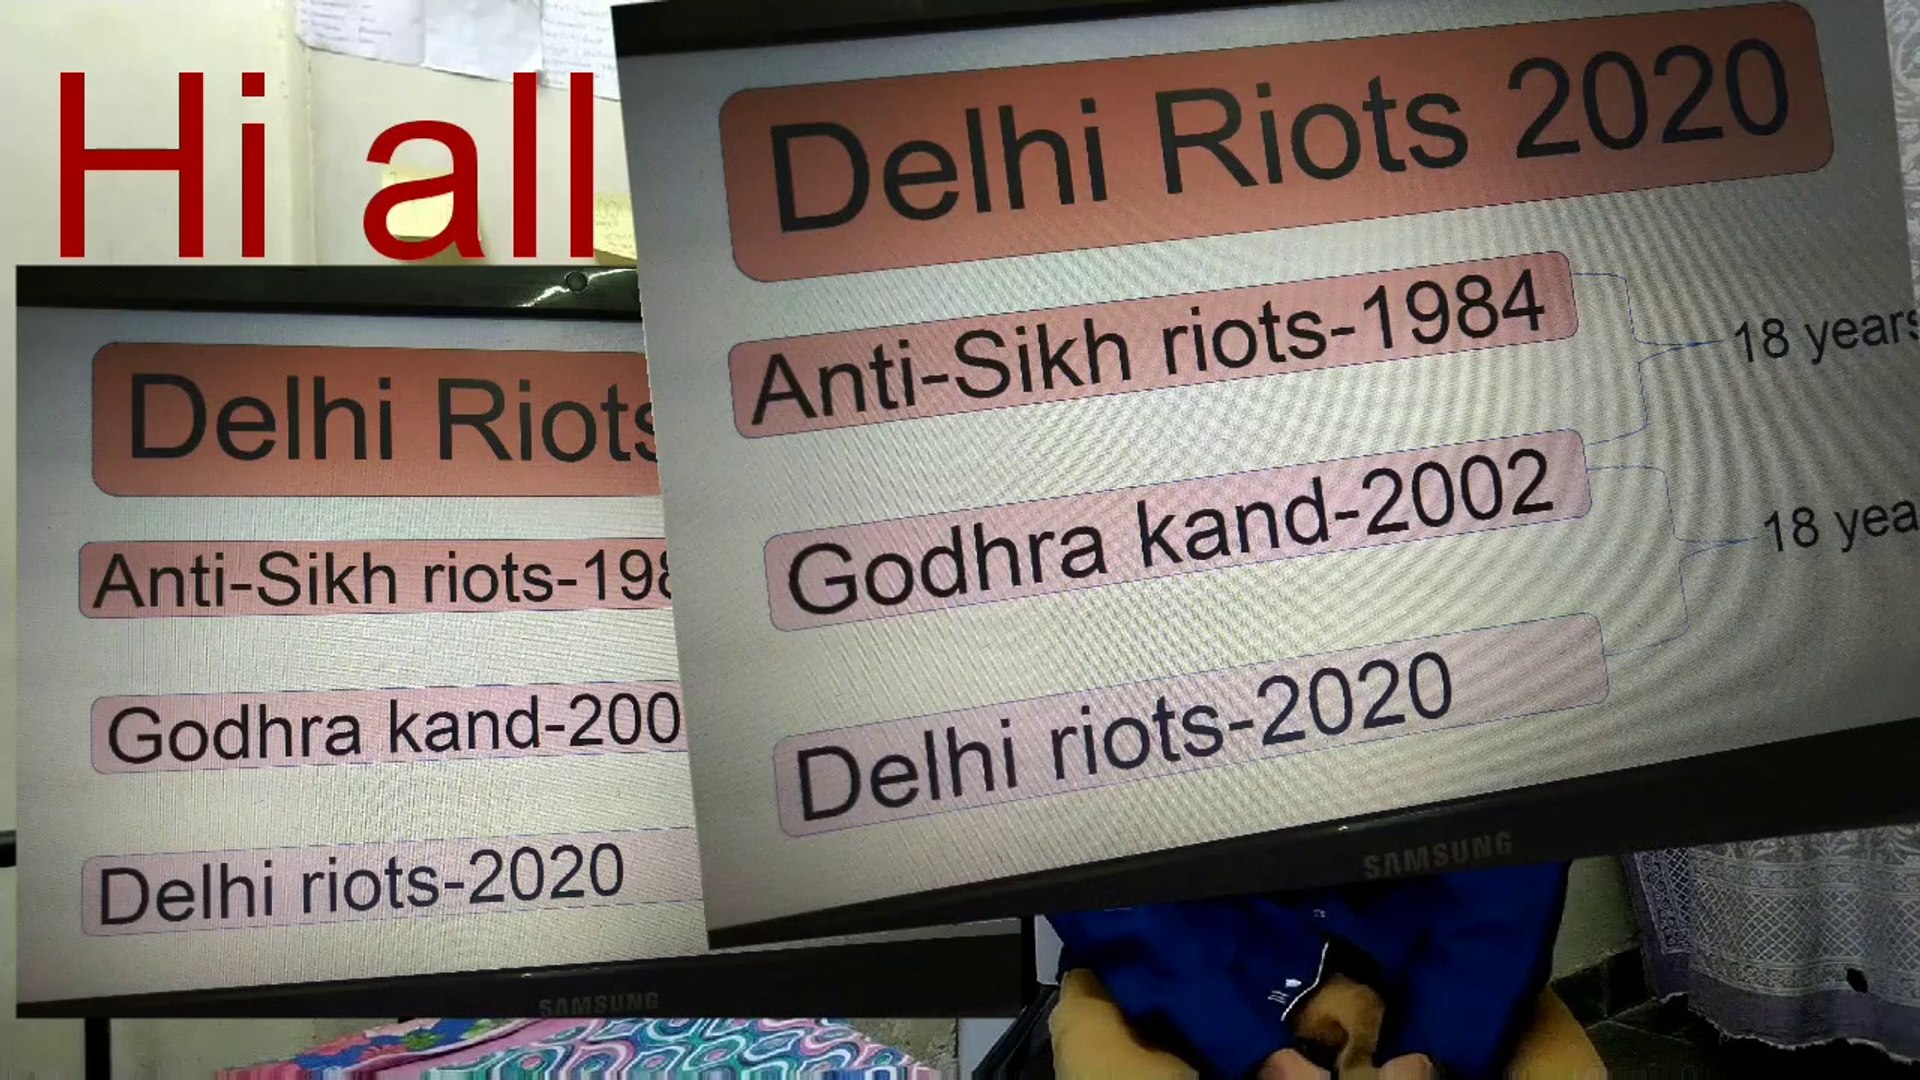 Delhi riots related to 2002 Godhra riots and 1984